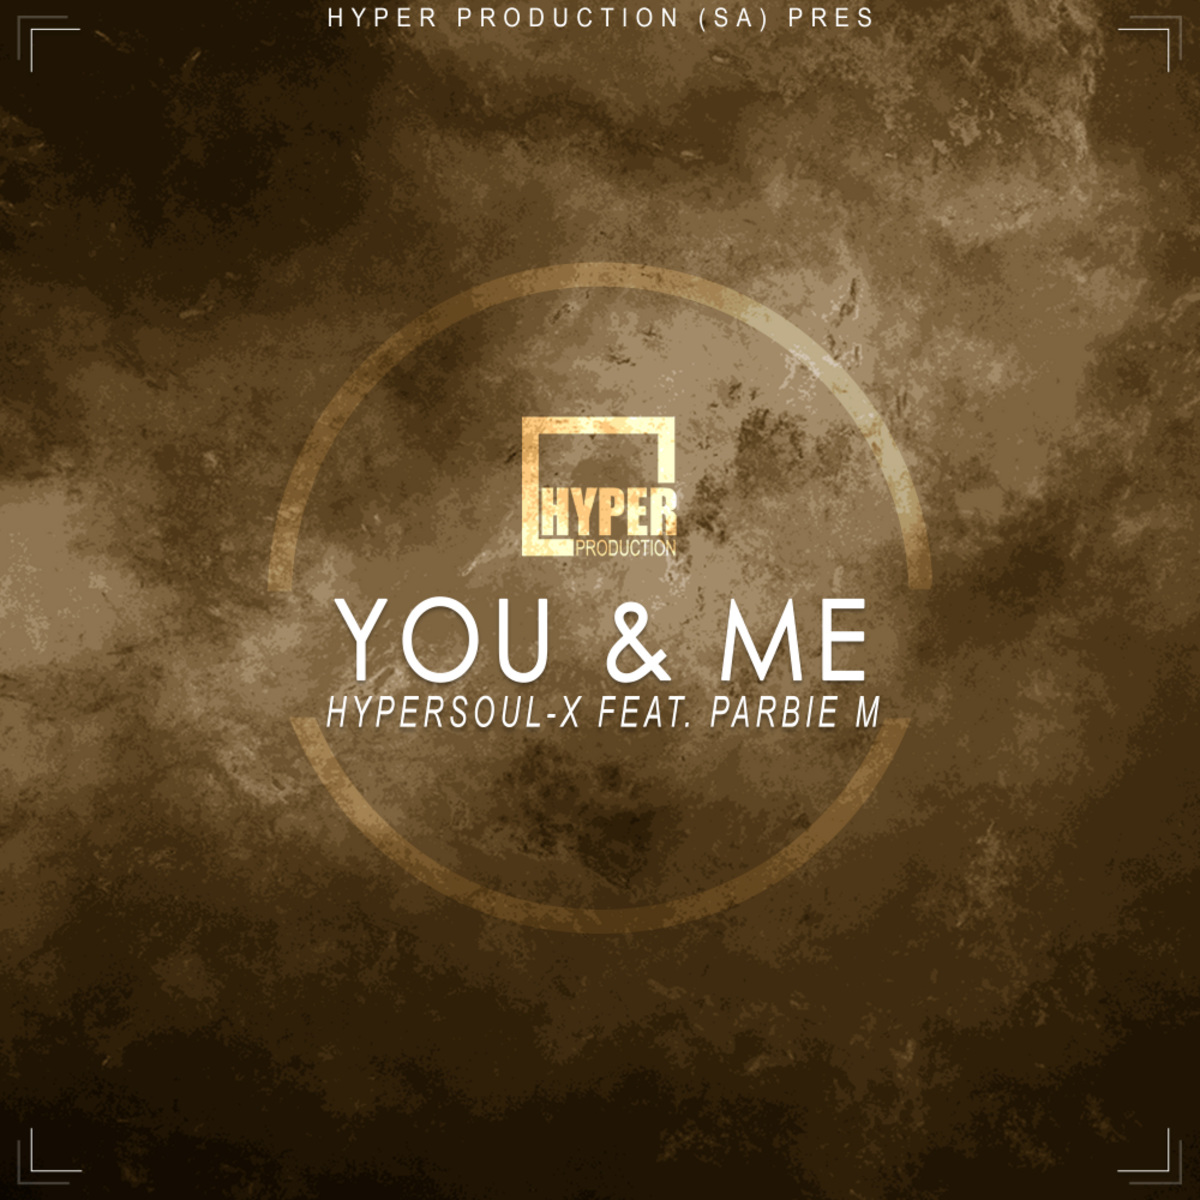 HyperSOUL-X ft Parbie M - You & Me / Hyper Production (SA)